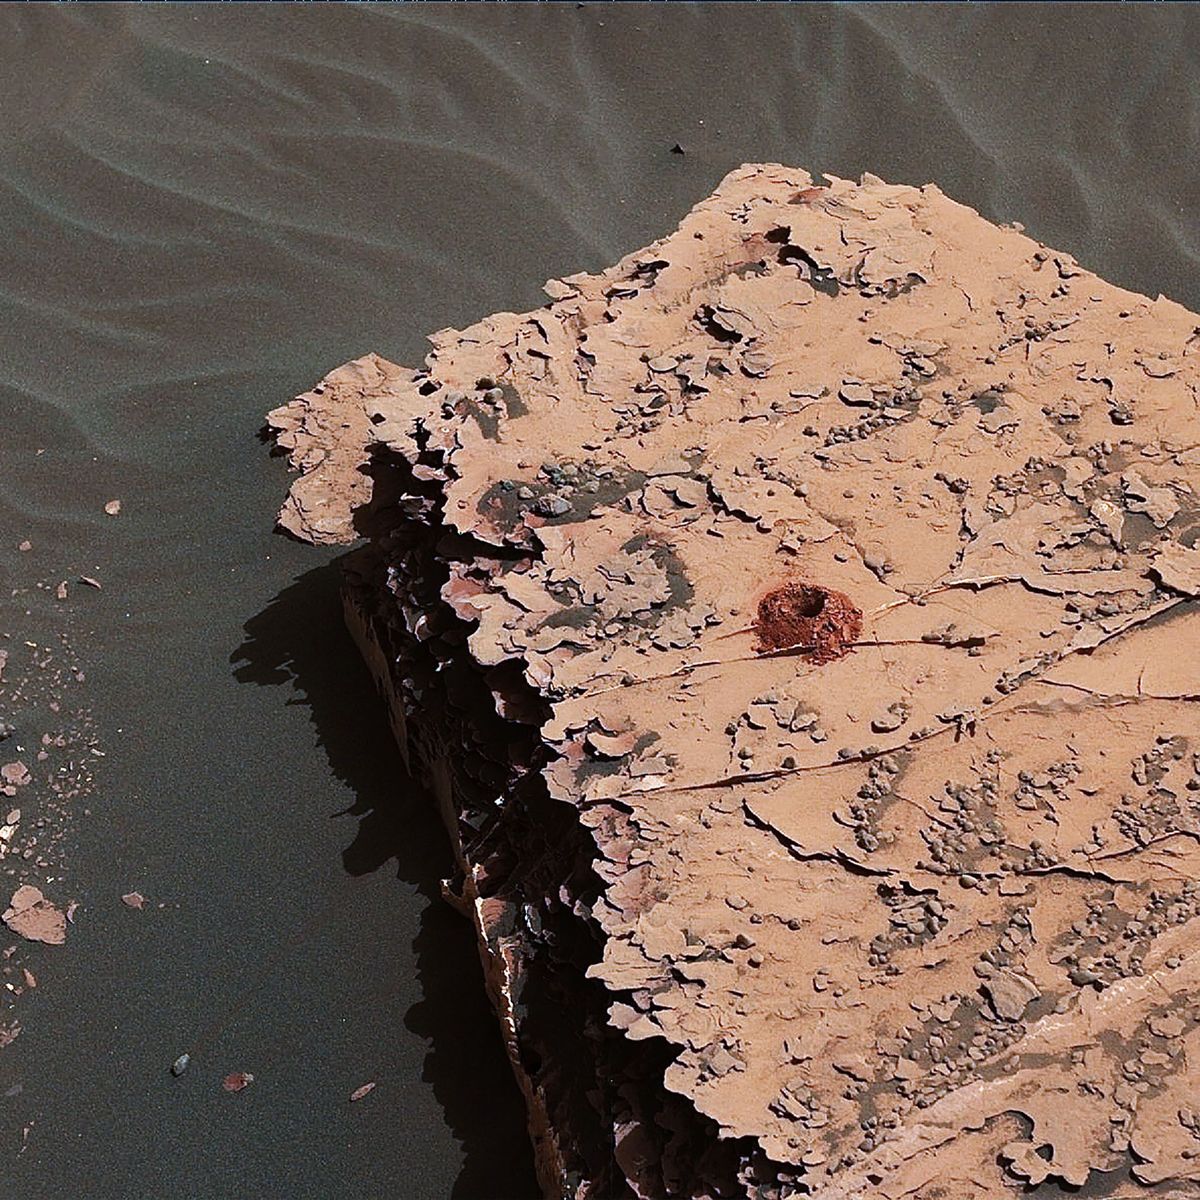 De Curiosity rover van de NASA boorde dit 5 centimeter diepe gat in een stuk steen op Mars in het kader van het onderzoek naar de bodemsamenstelling van de planeet